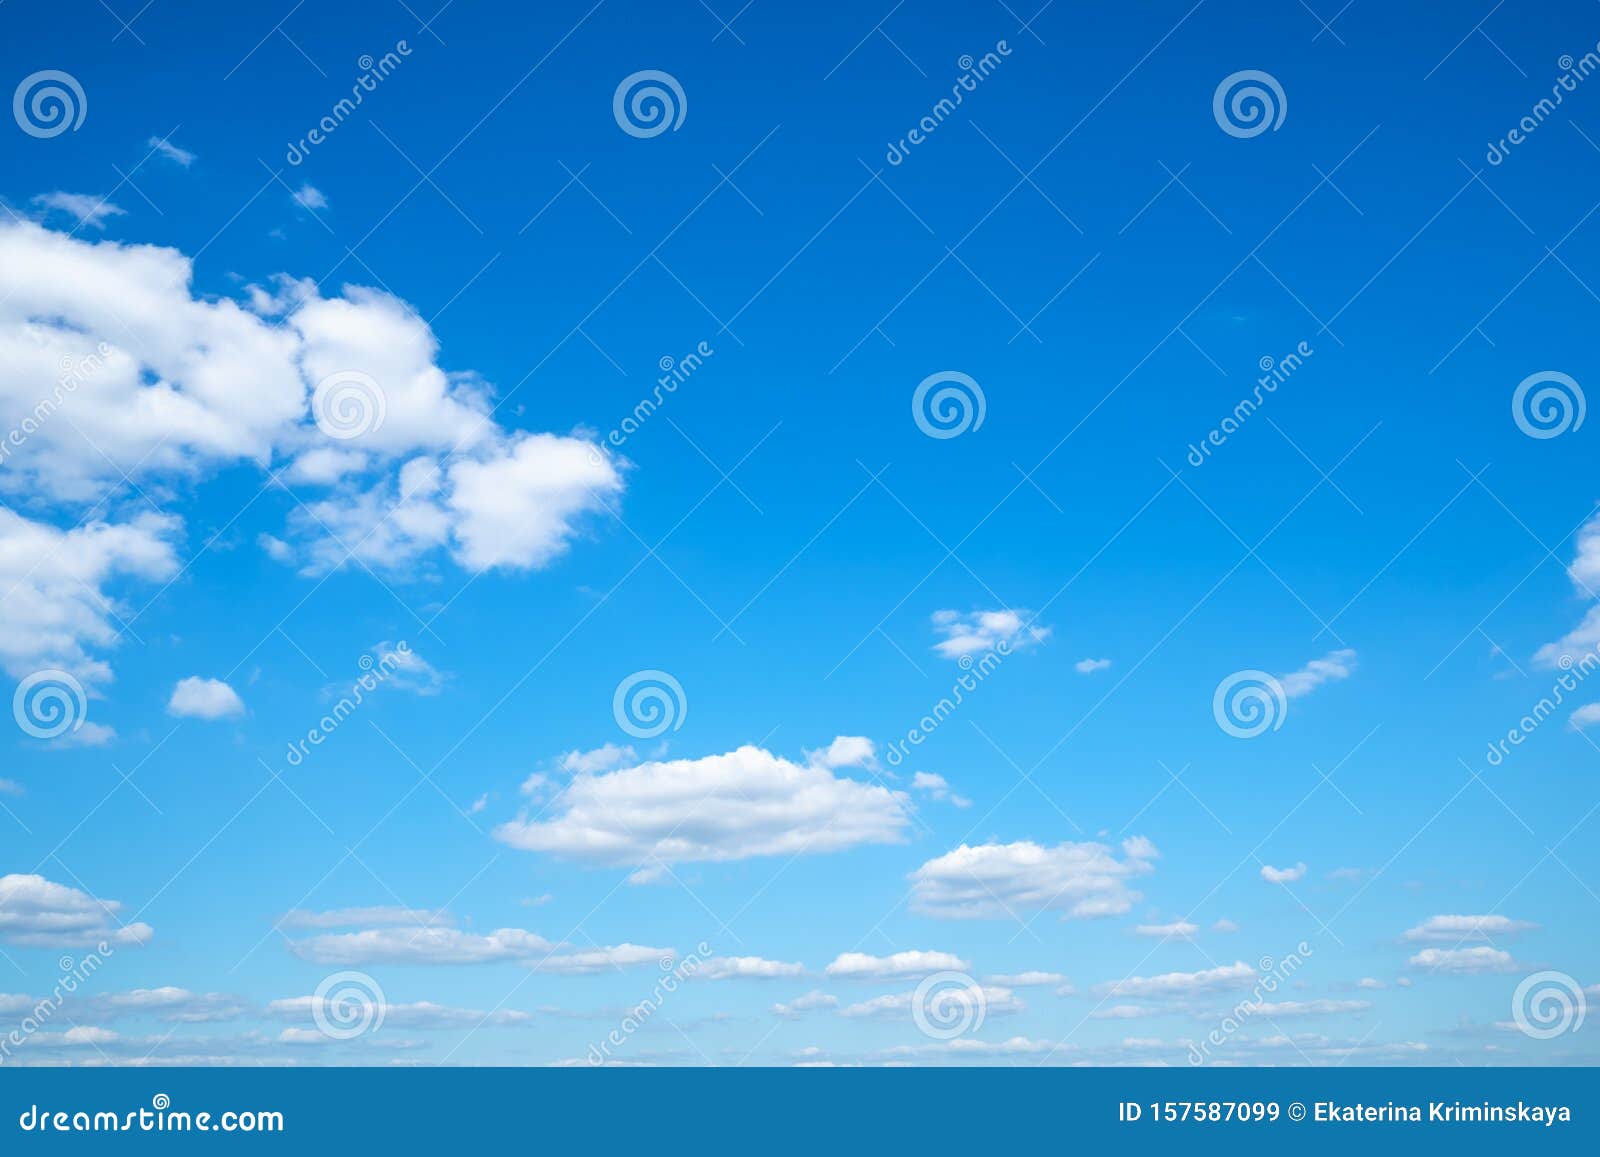 little light cumuli clouds in blue sky